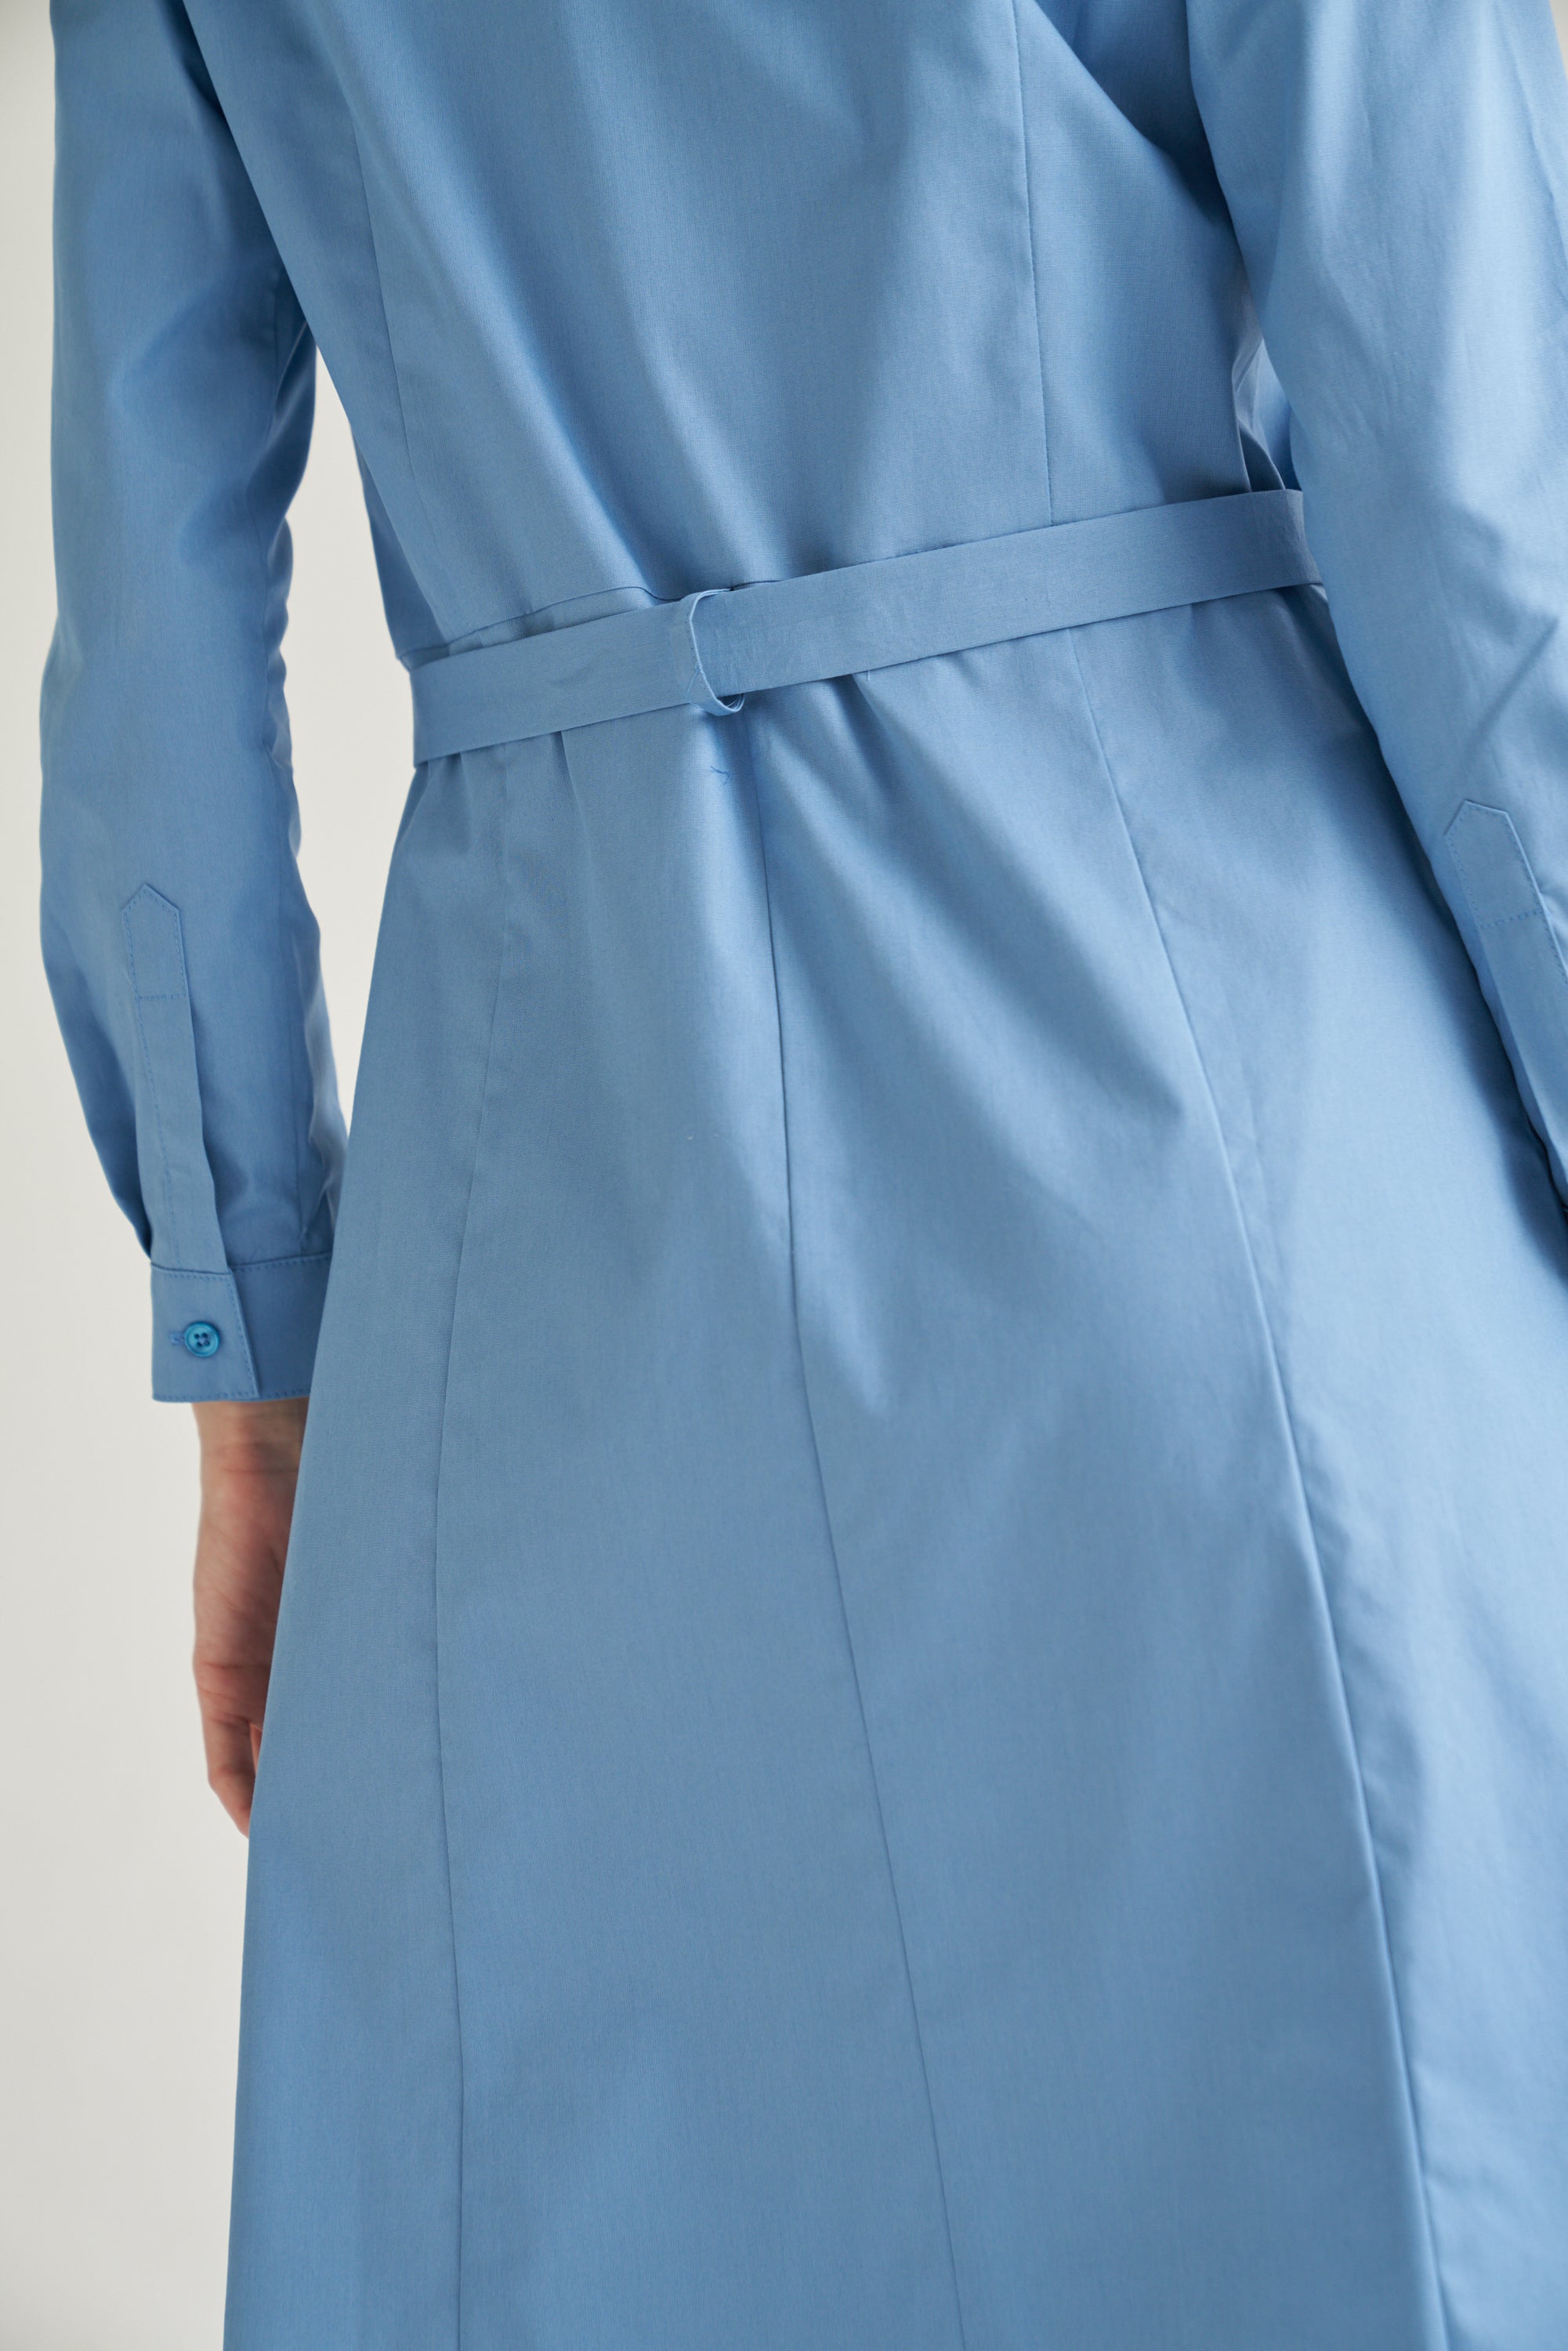 Detailaufnahme von unserem sehr eleganten Hemdblusenkleid in blau. Es zeigt die Ansicht von hinten.